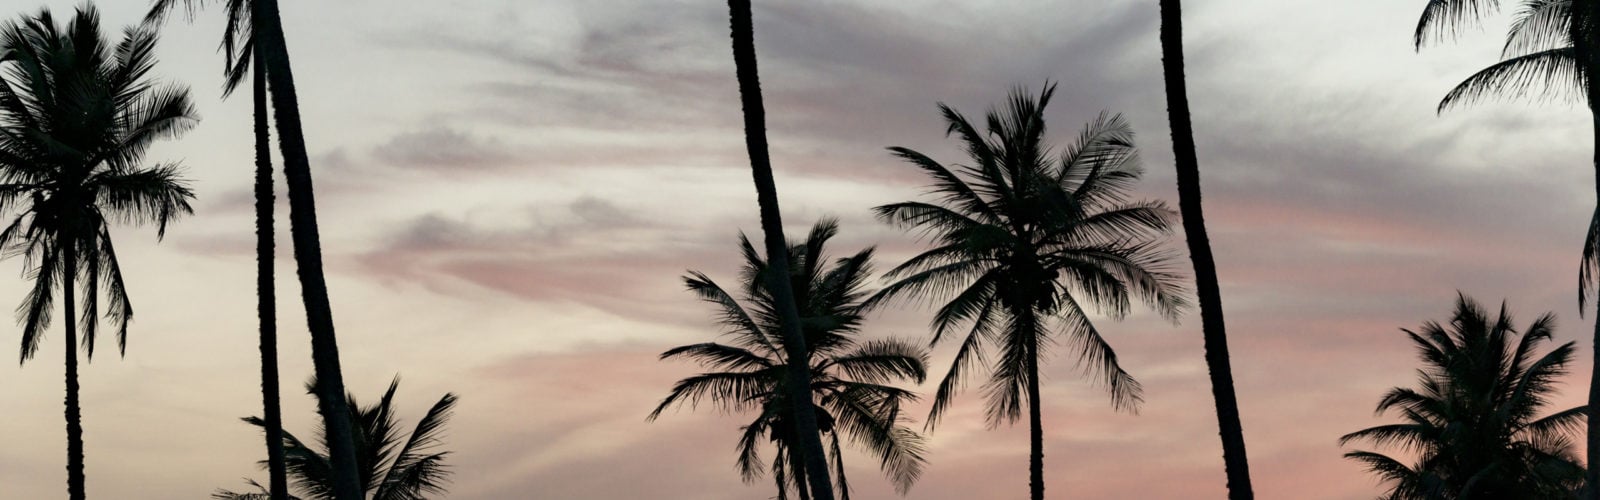 amanwella-palm-trees-and-sunset